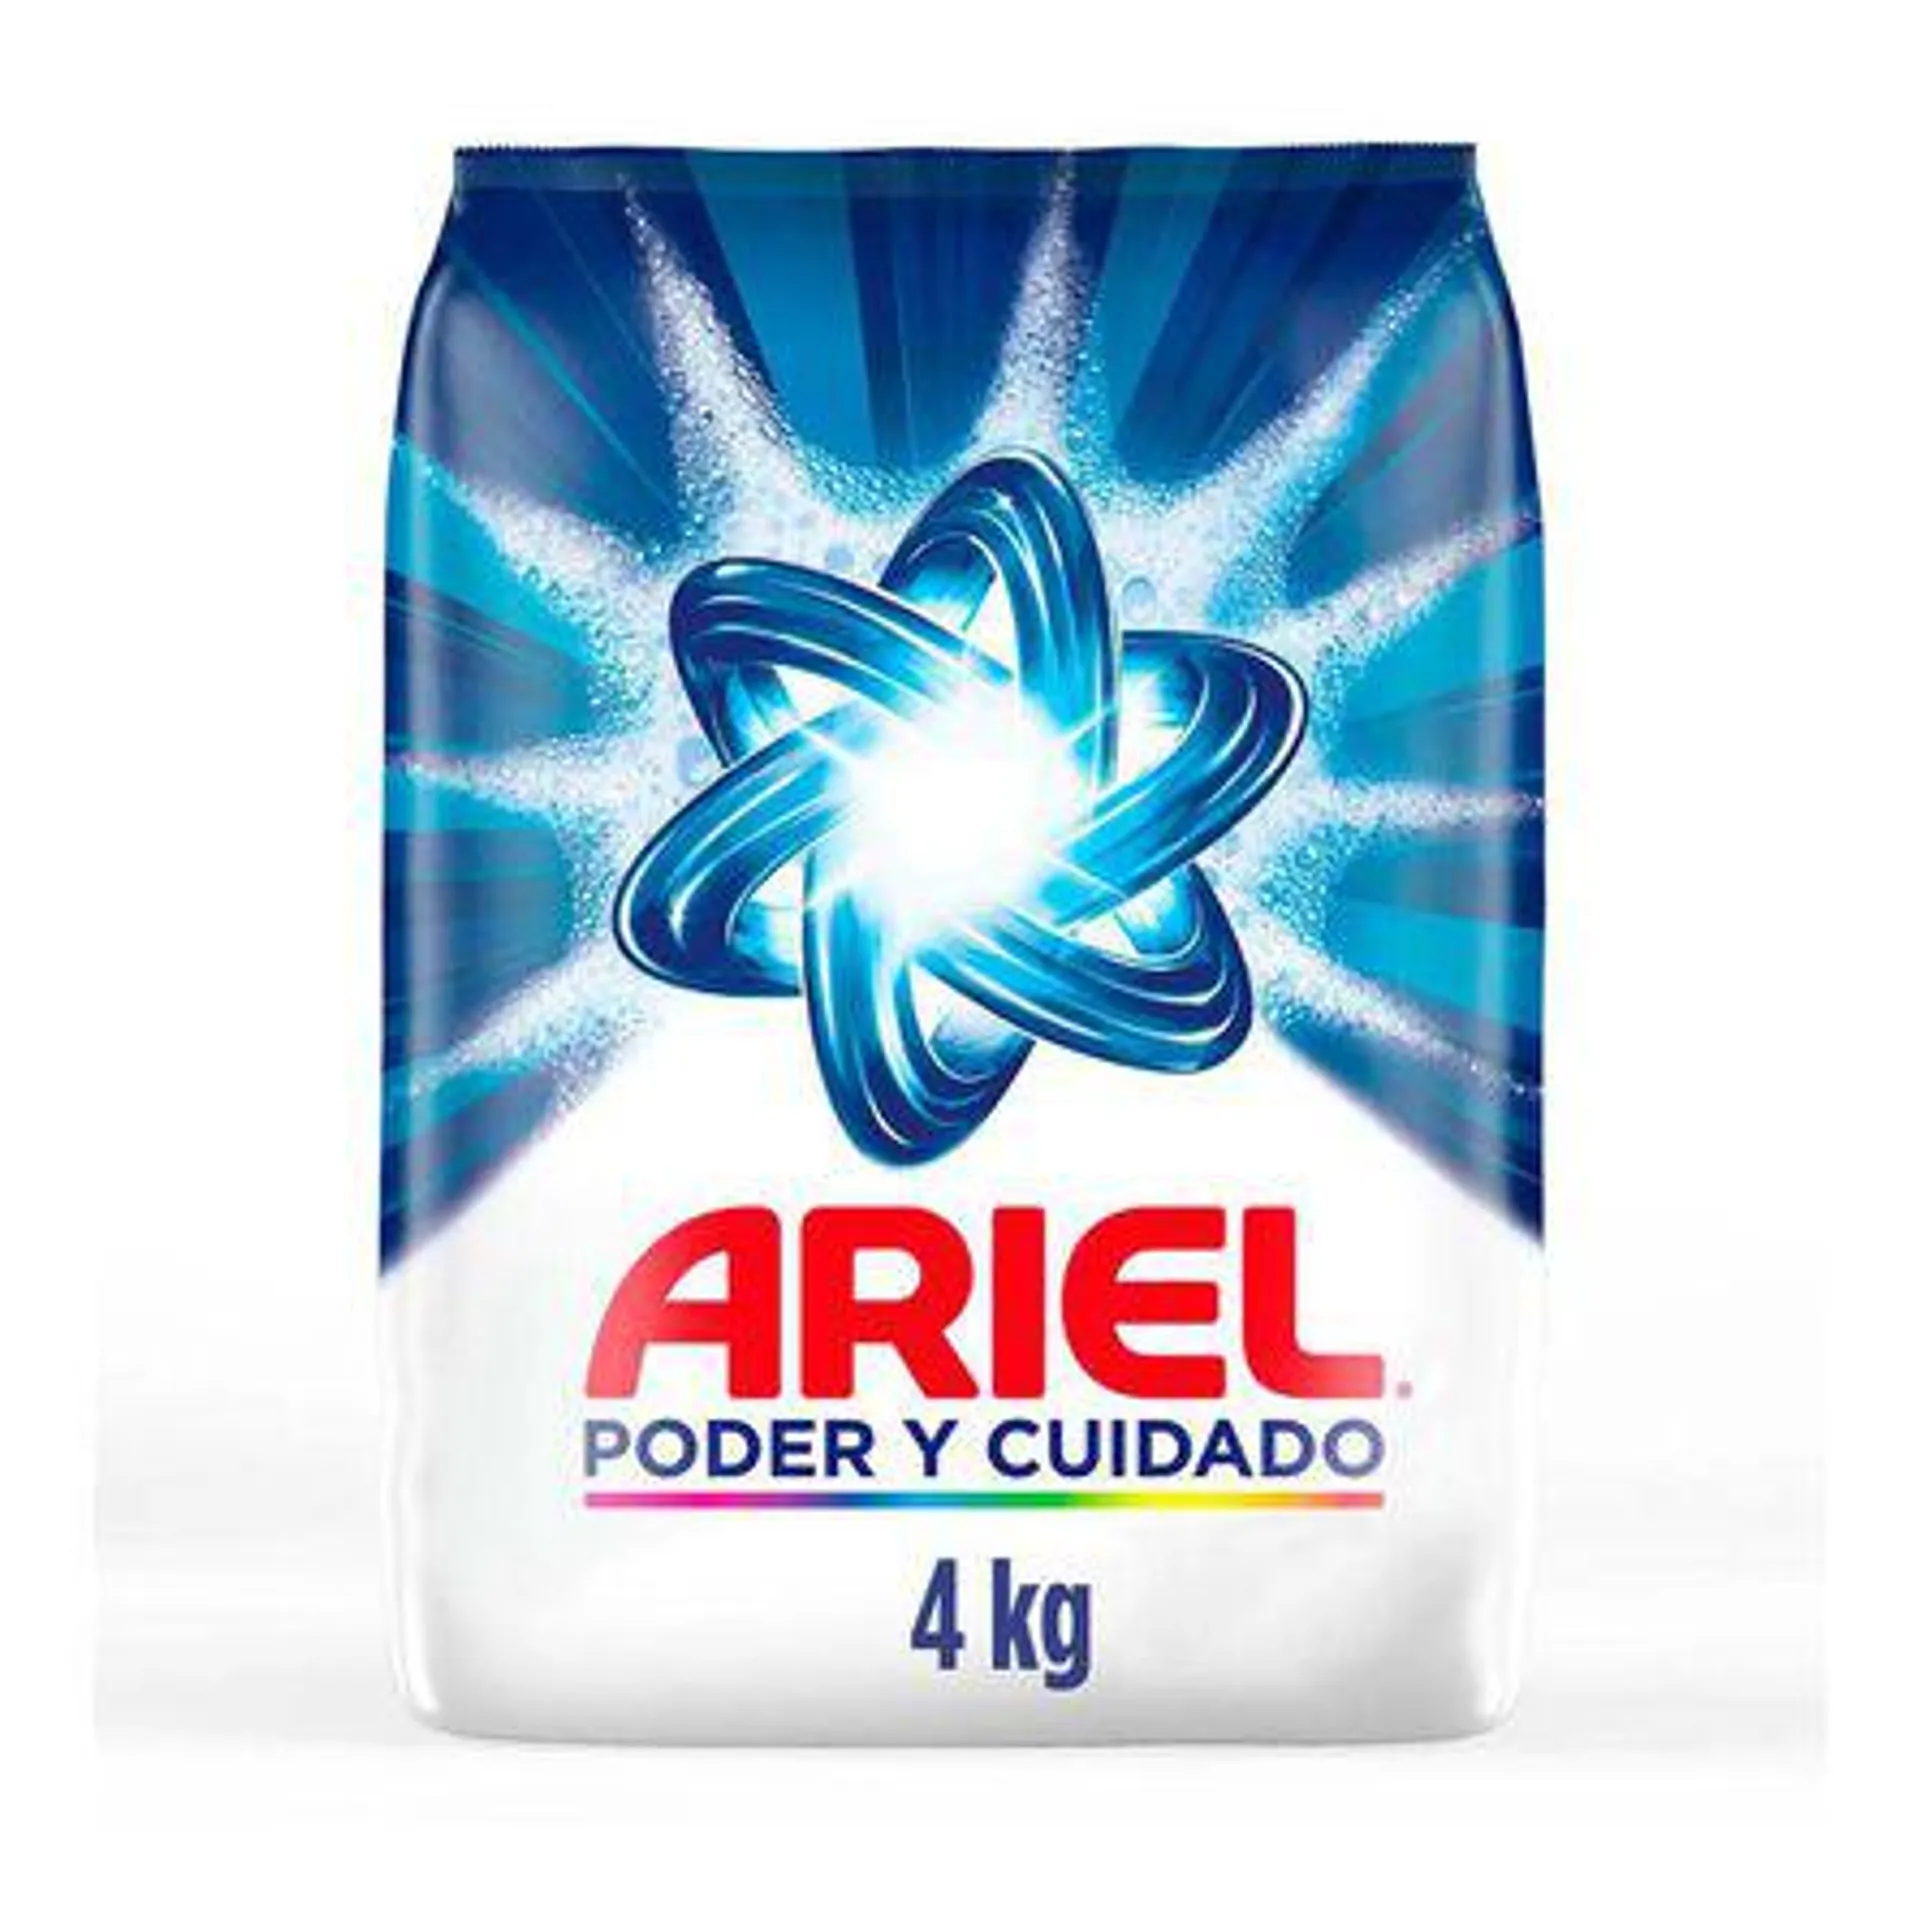 Ariel Poder y Cuidado Detergente en Polvo 4 kg